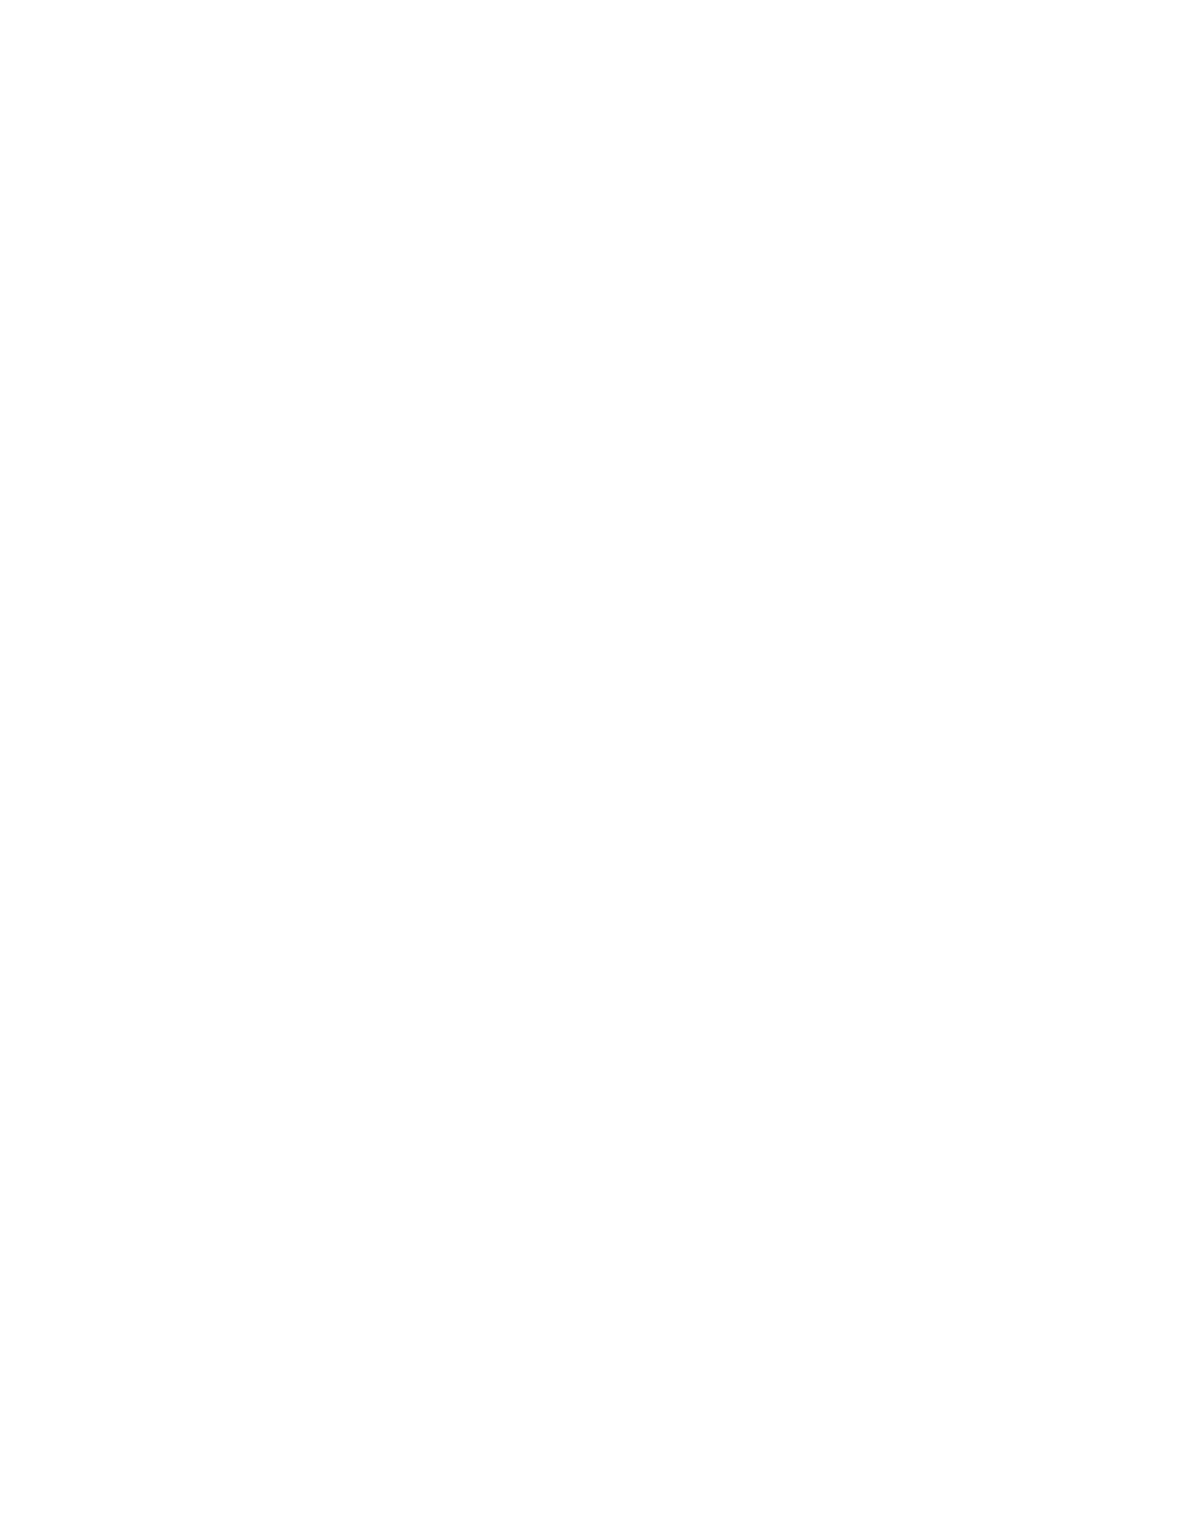 CI&T logo pour fonds sombres (PNG transparent)